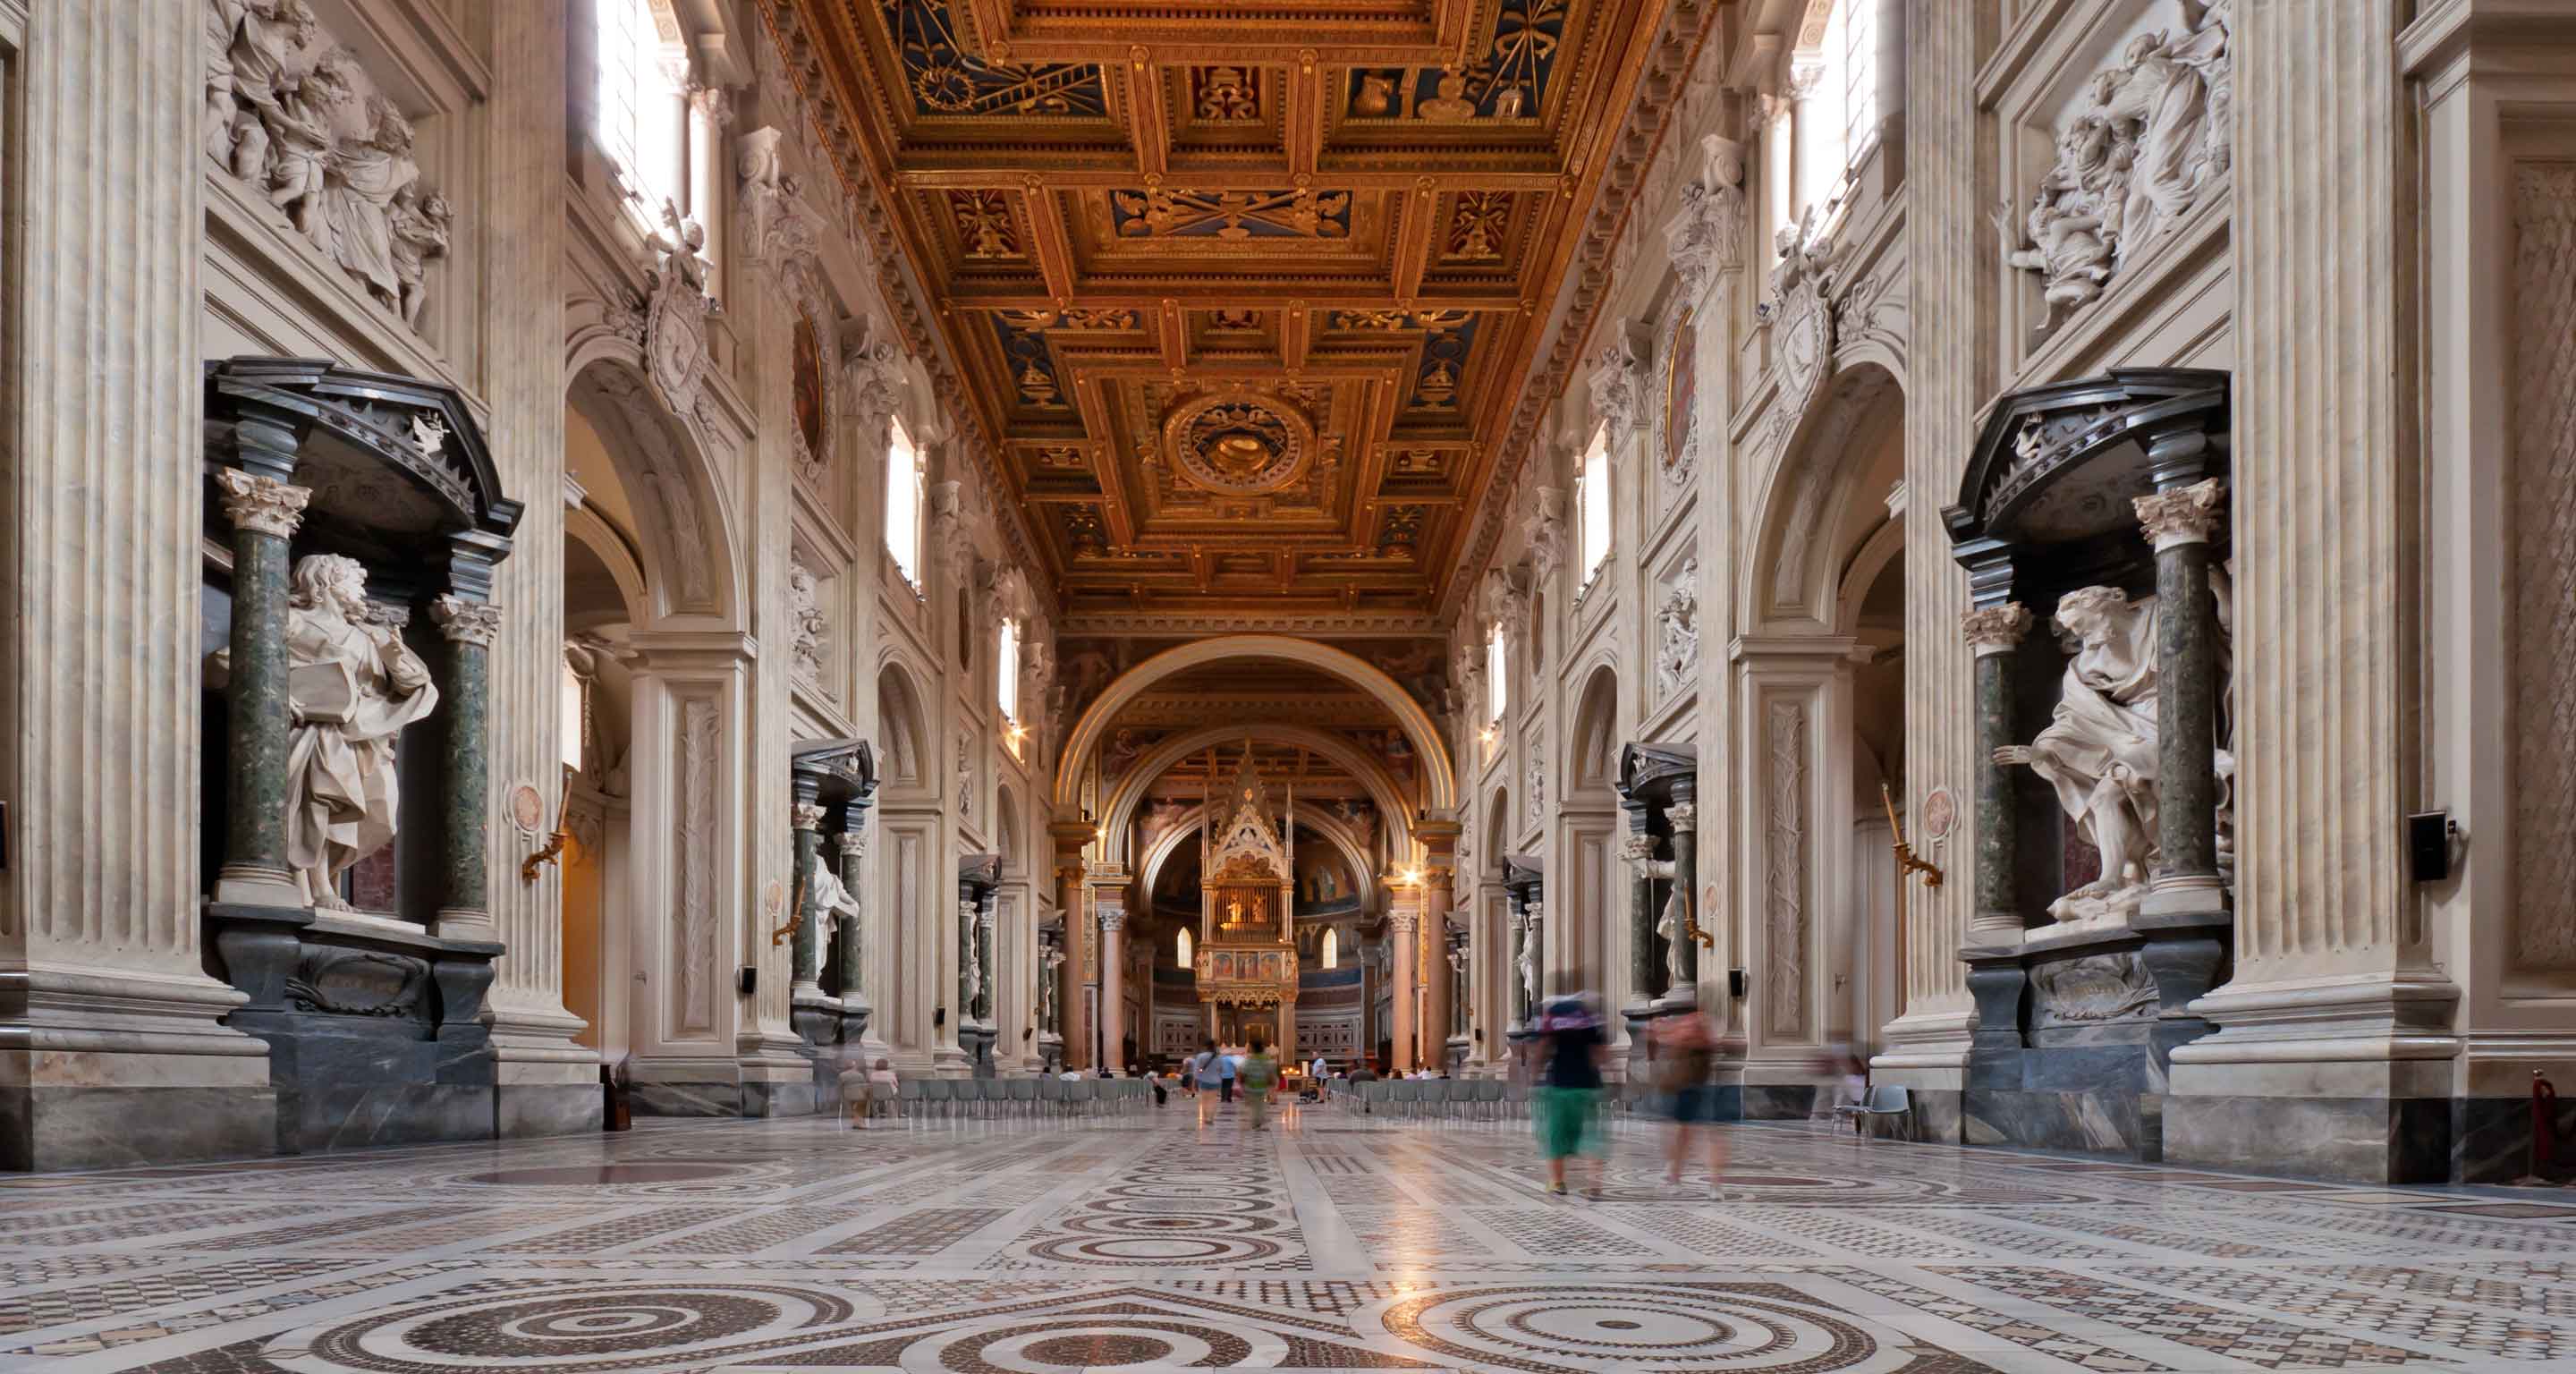 Inside the Basilica of San Giovanni in Laterano in Rome.